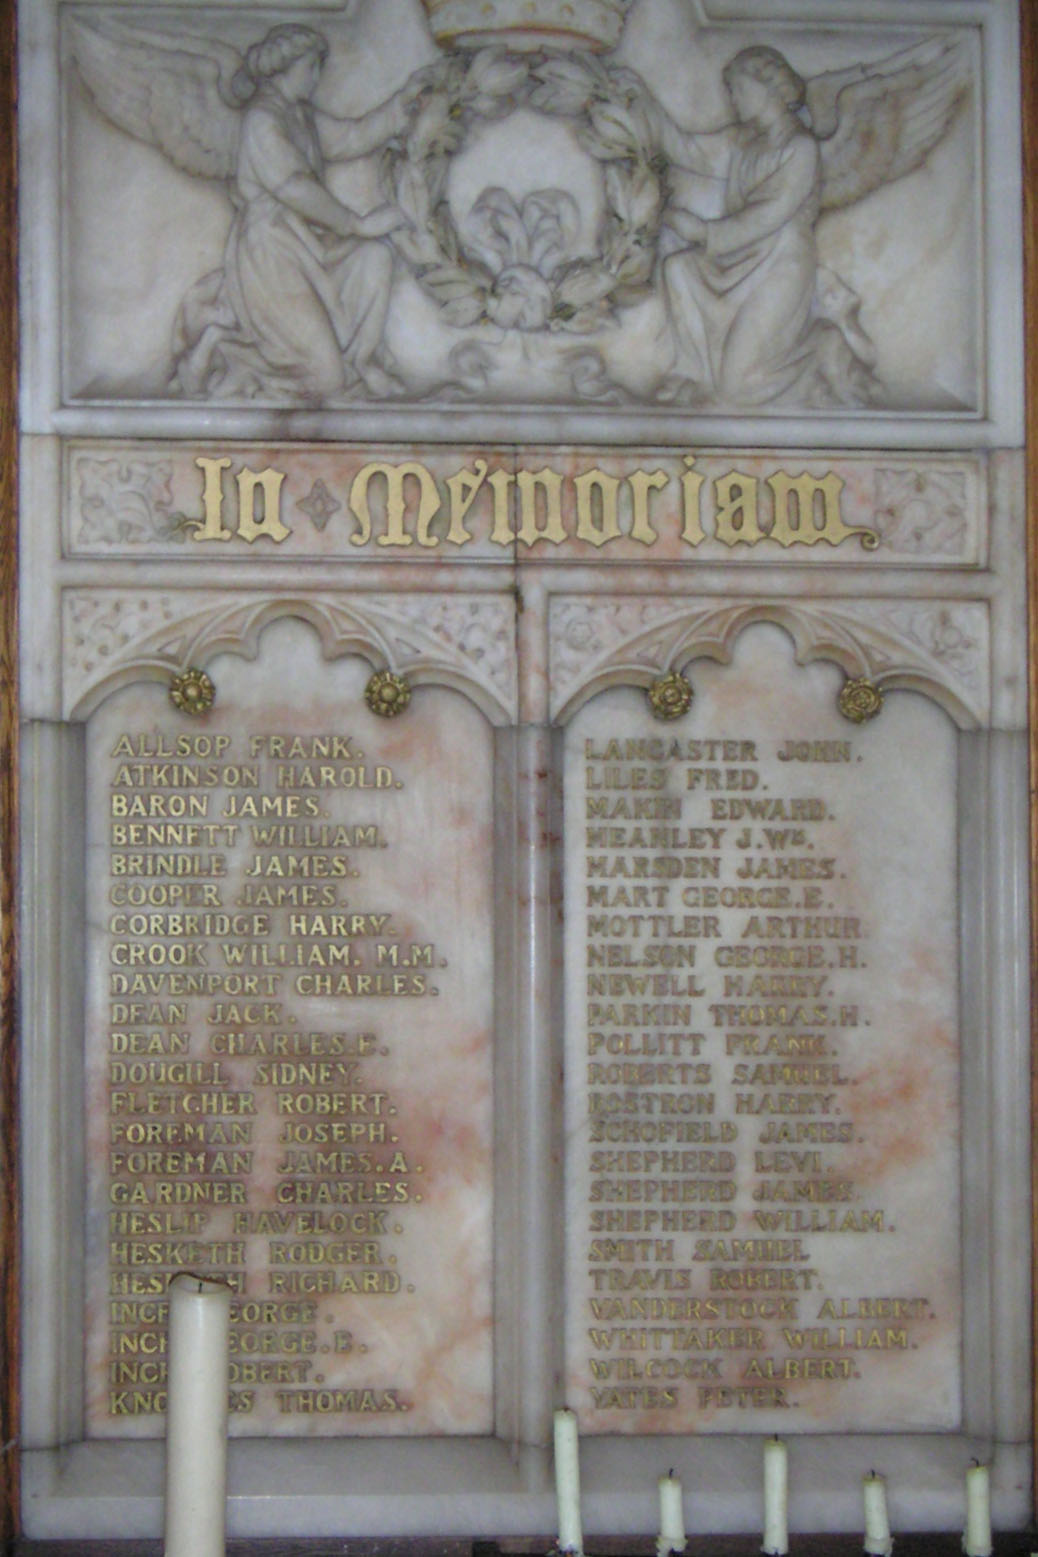 Memorial inside All Souls, Centre panel